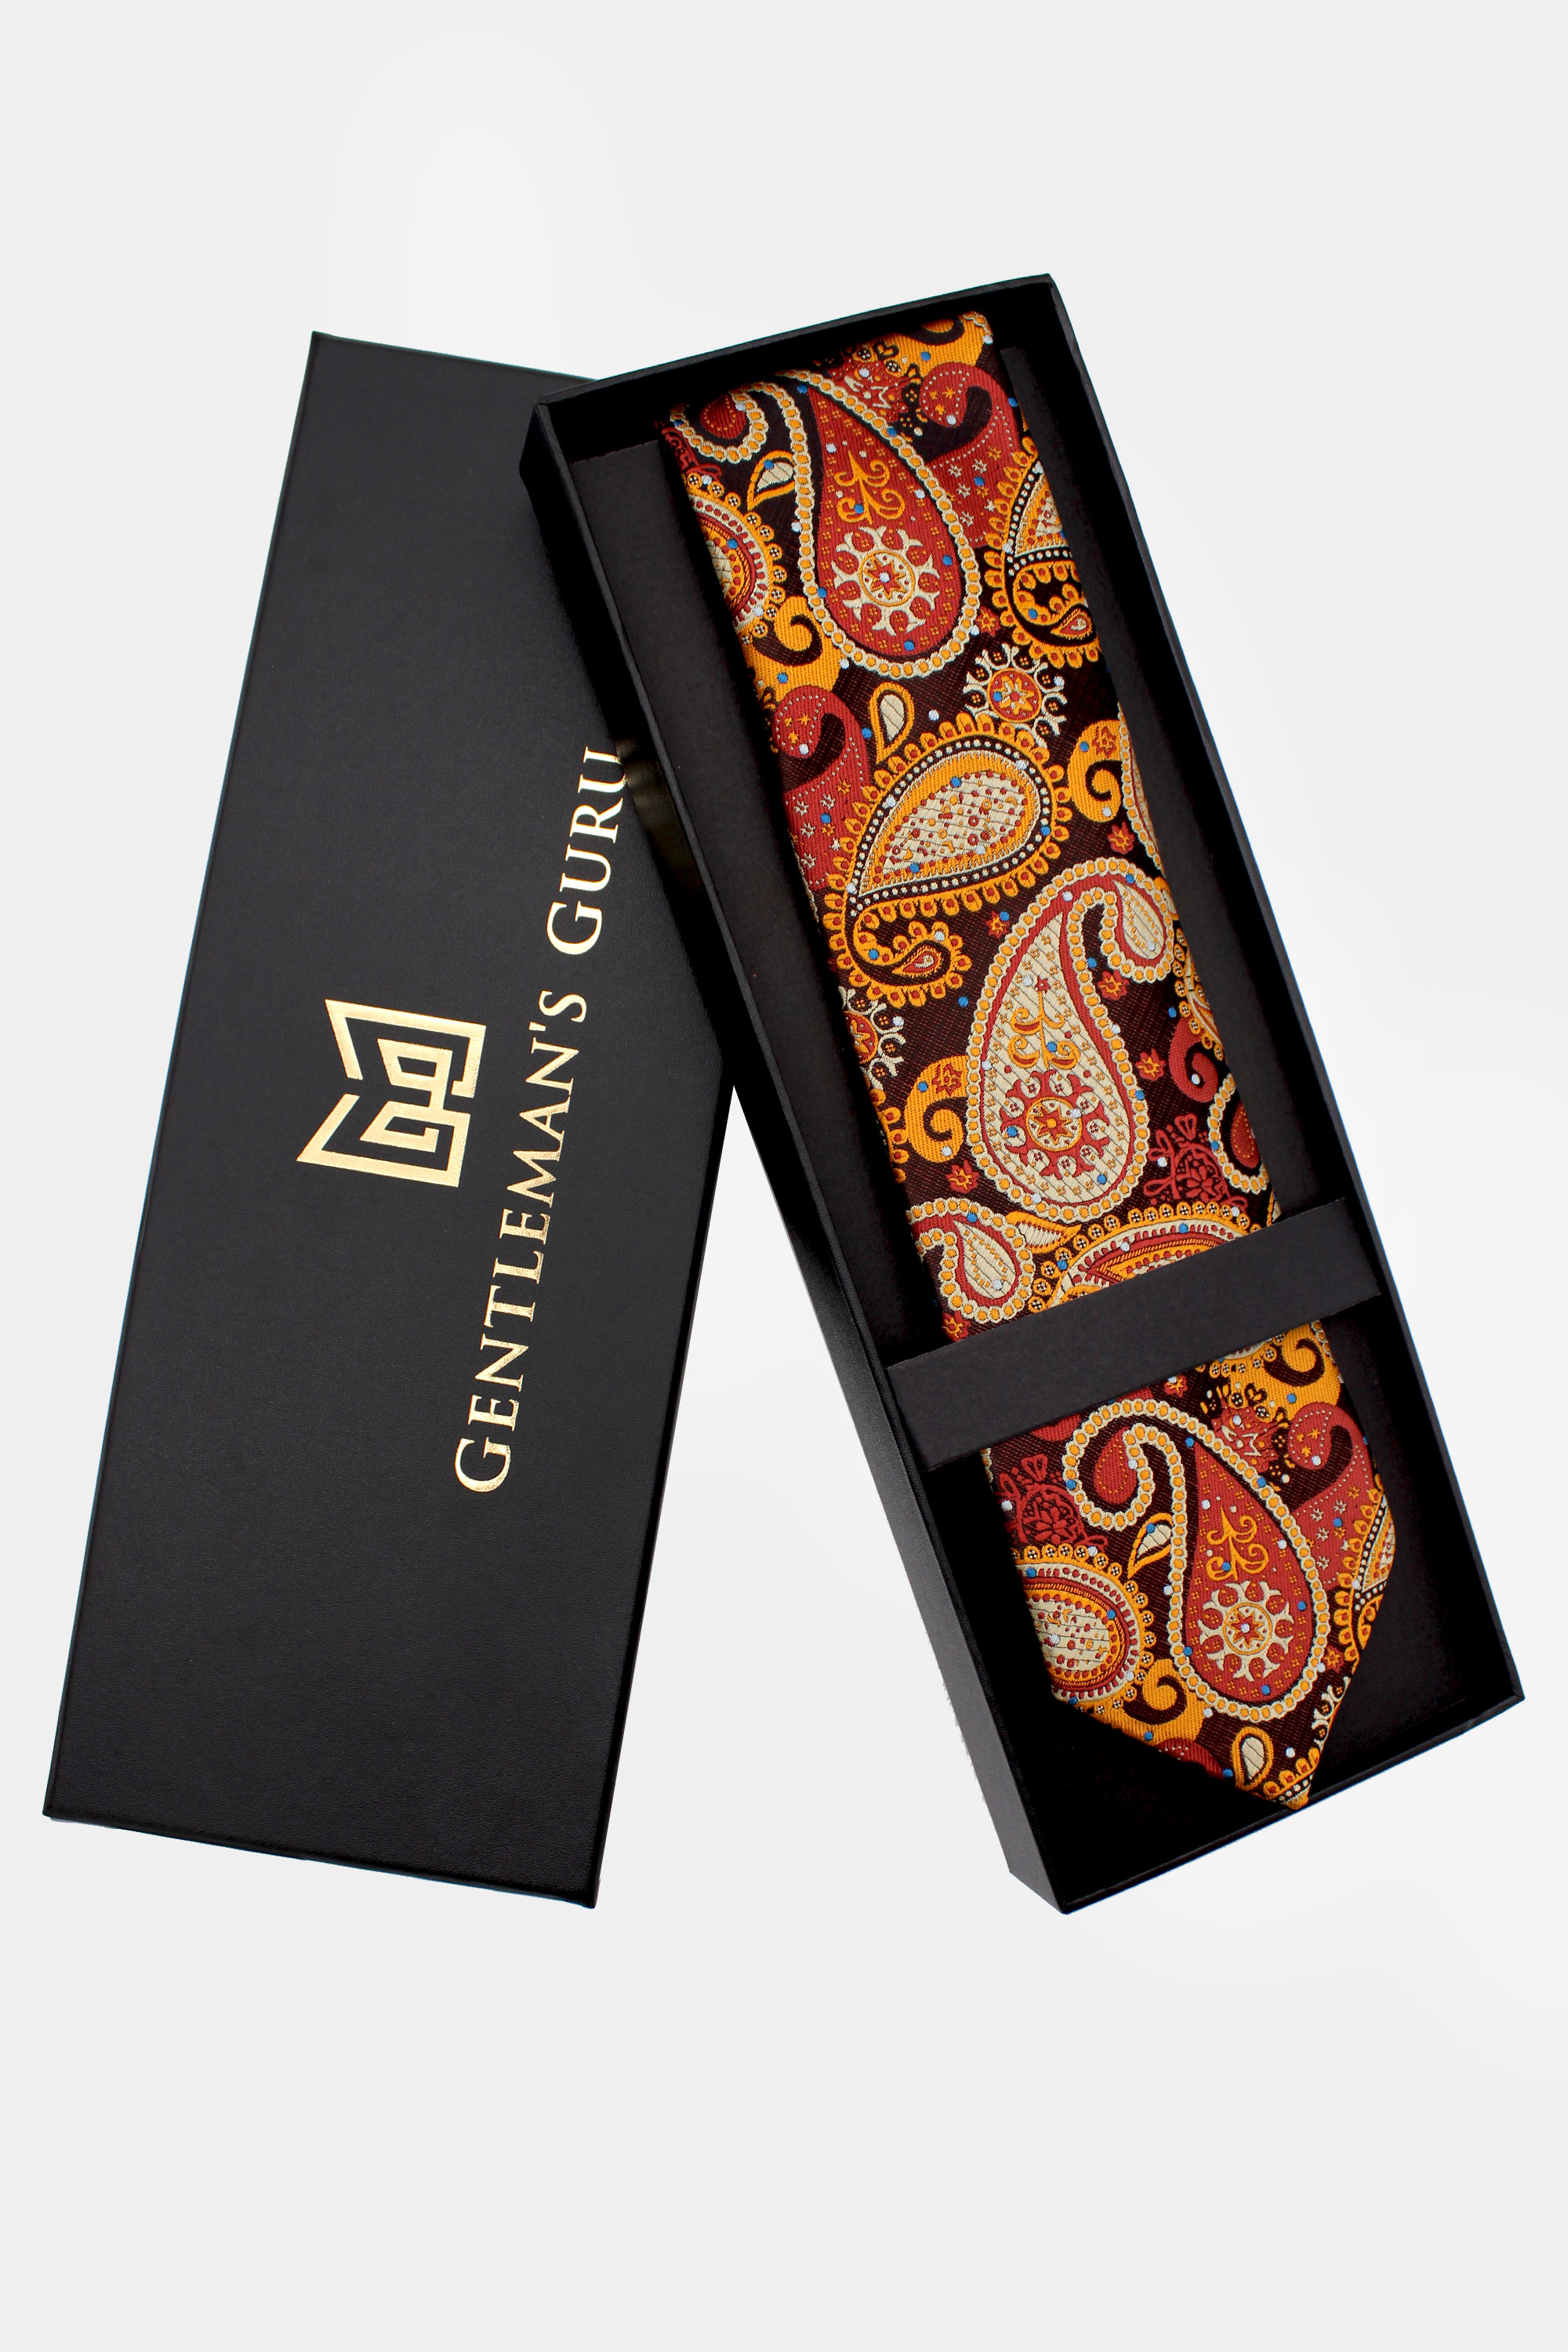 Burnt-Orange-Necktie-Tie-Wedding-from-Gentlemansguru.com